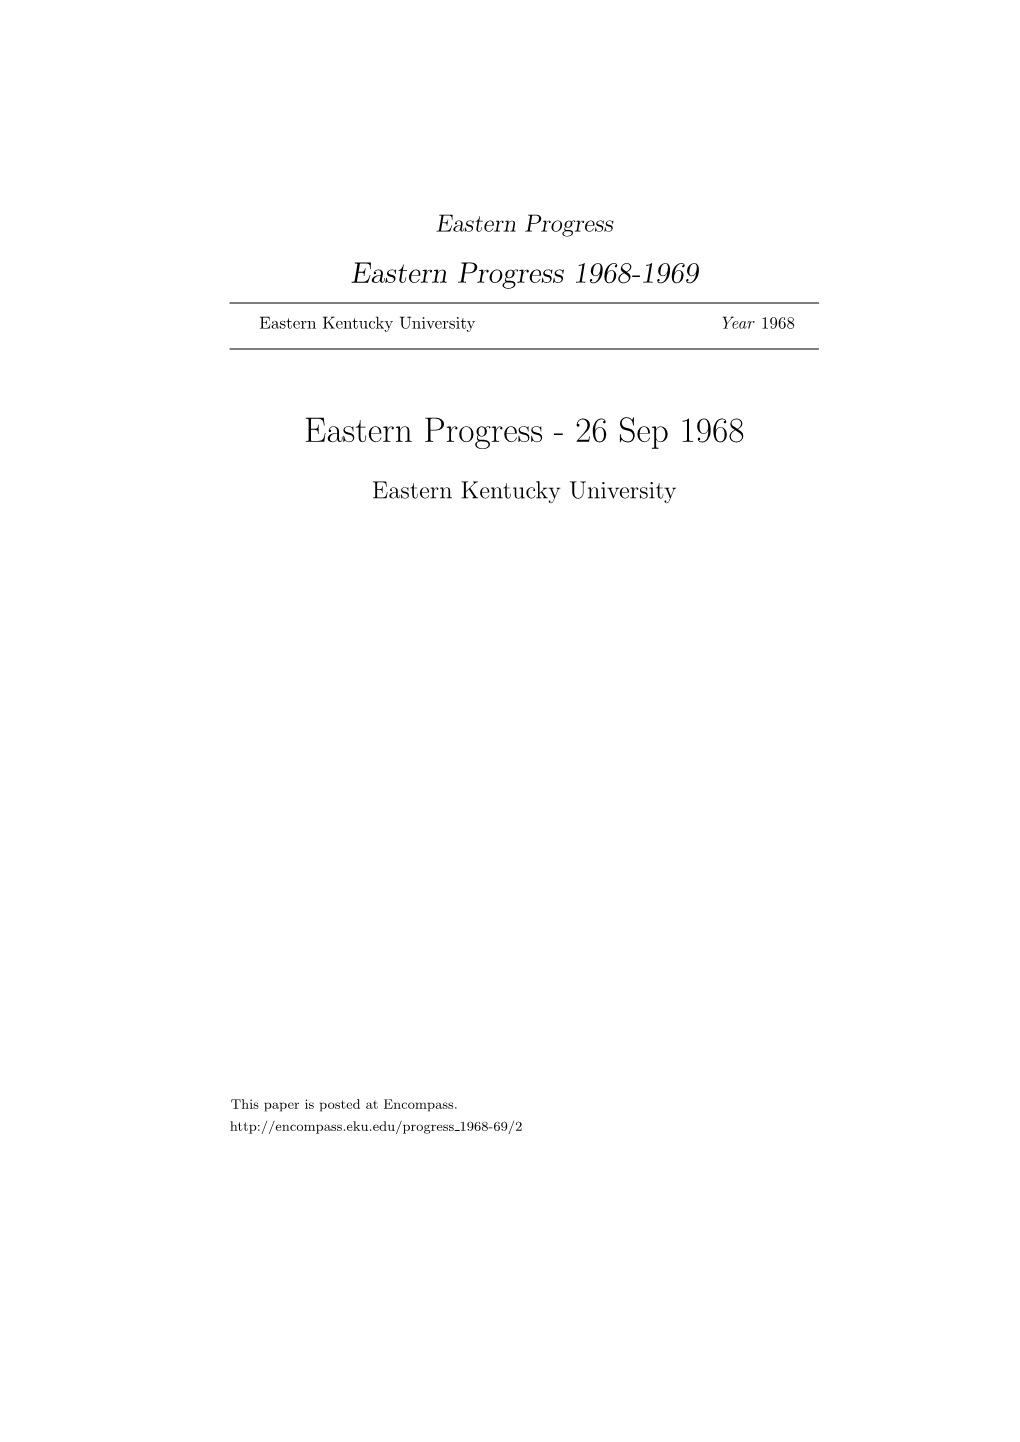 Eastern Progress Eastern Progress 1968-1969